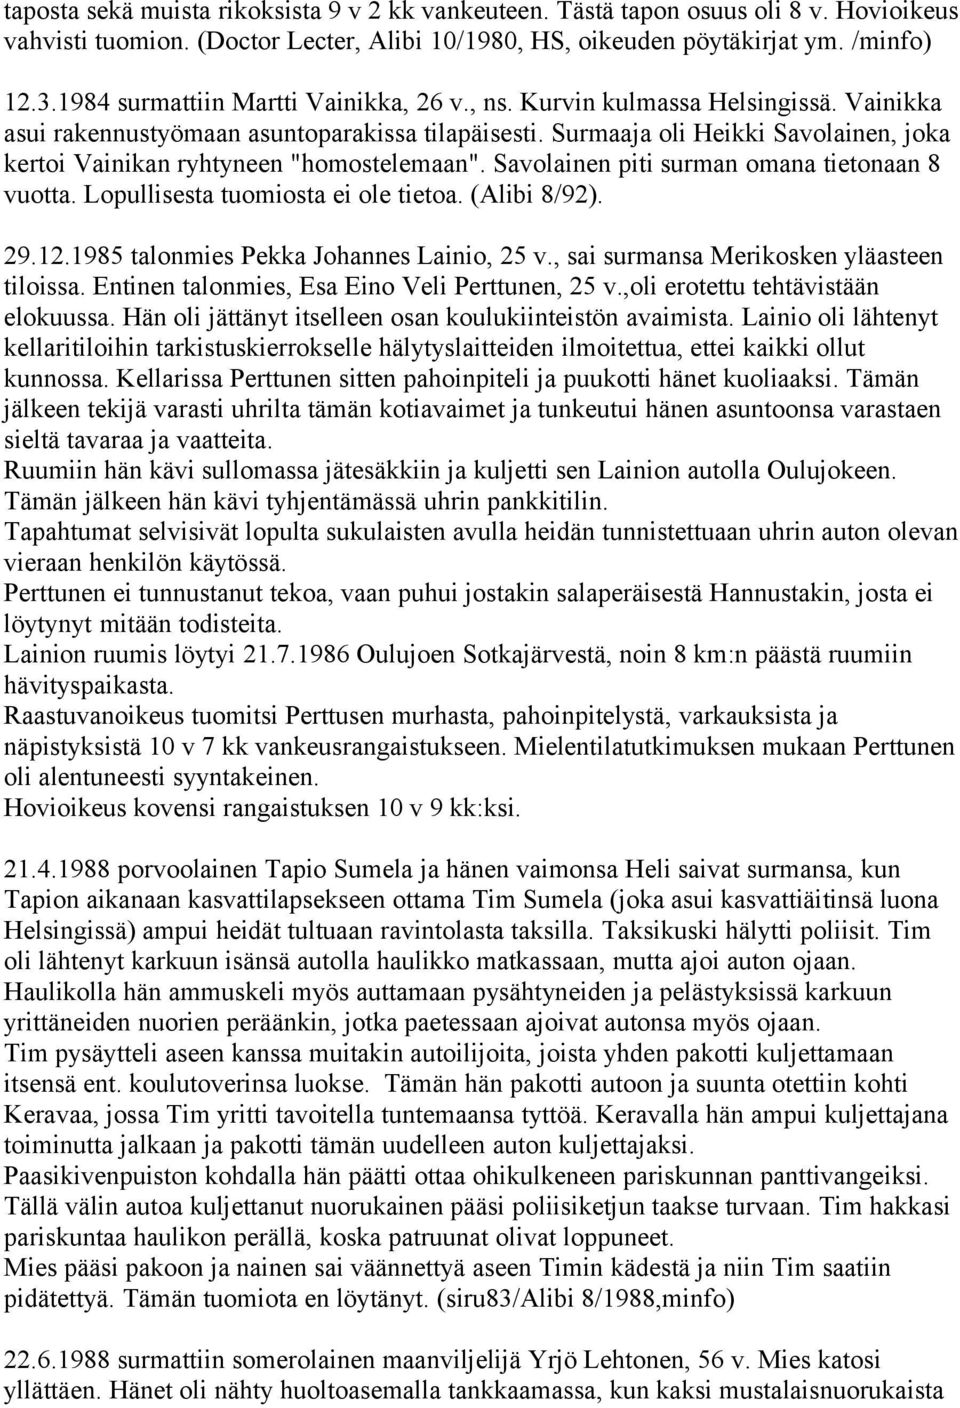 Surmaaja oli Heikki Savolainen, joka kertoi Vainikan ryhtyneen "homostelemaan". Savolainen piti surman omana tietonaan 8 vuotta. Lopullisesta tuomiosta ei ole tietoa. (Alibi 8/92). 29.12.